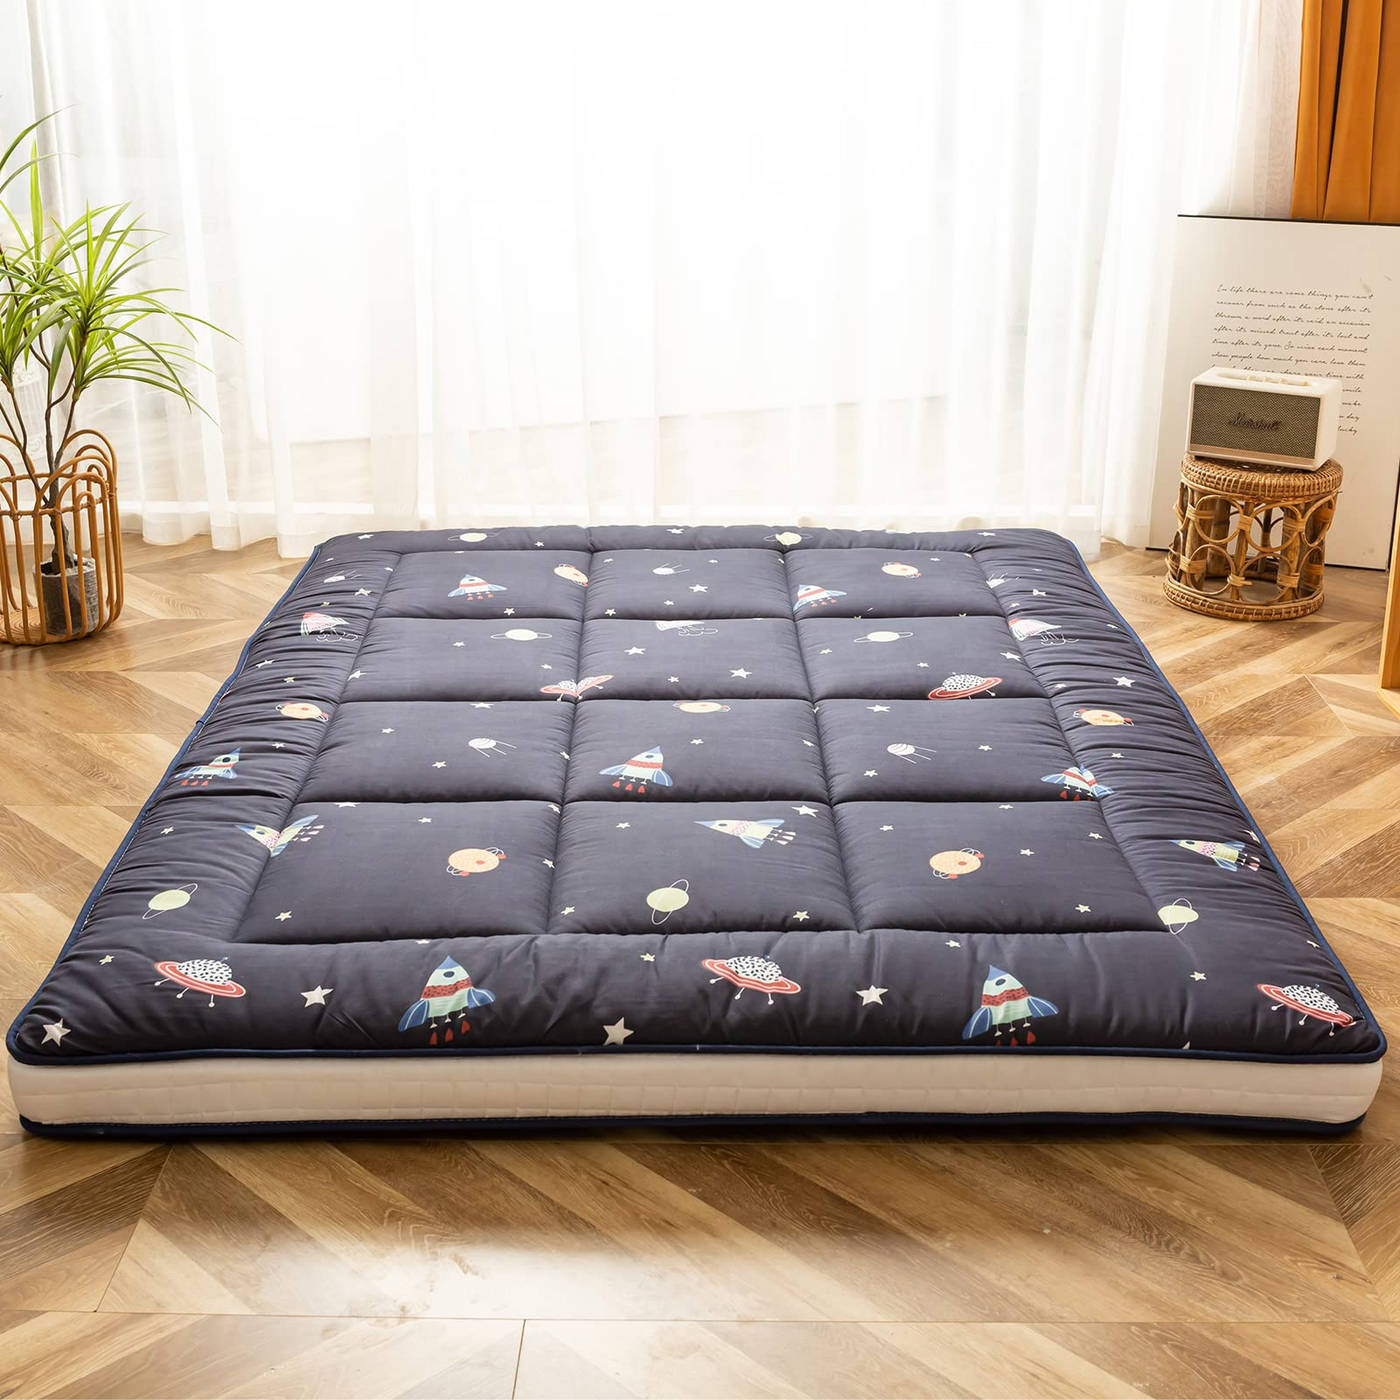 floor mattress#pattern_navy-space